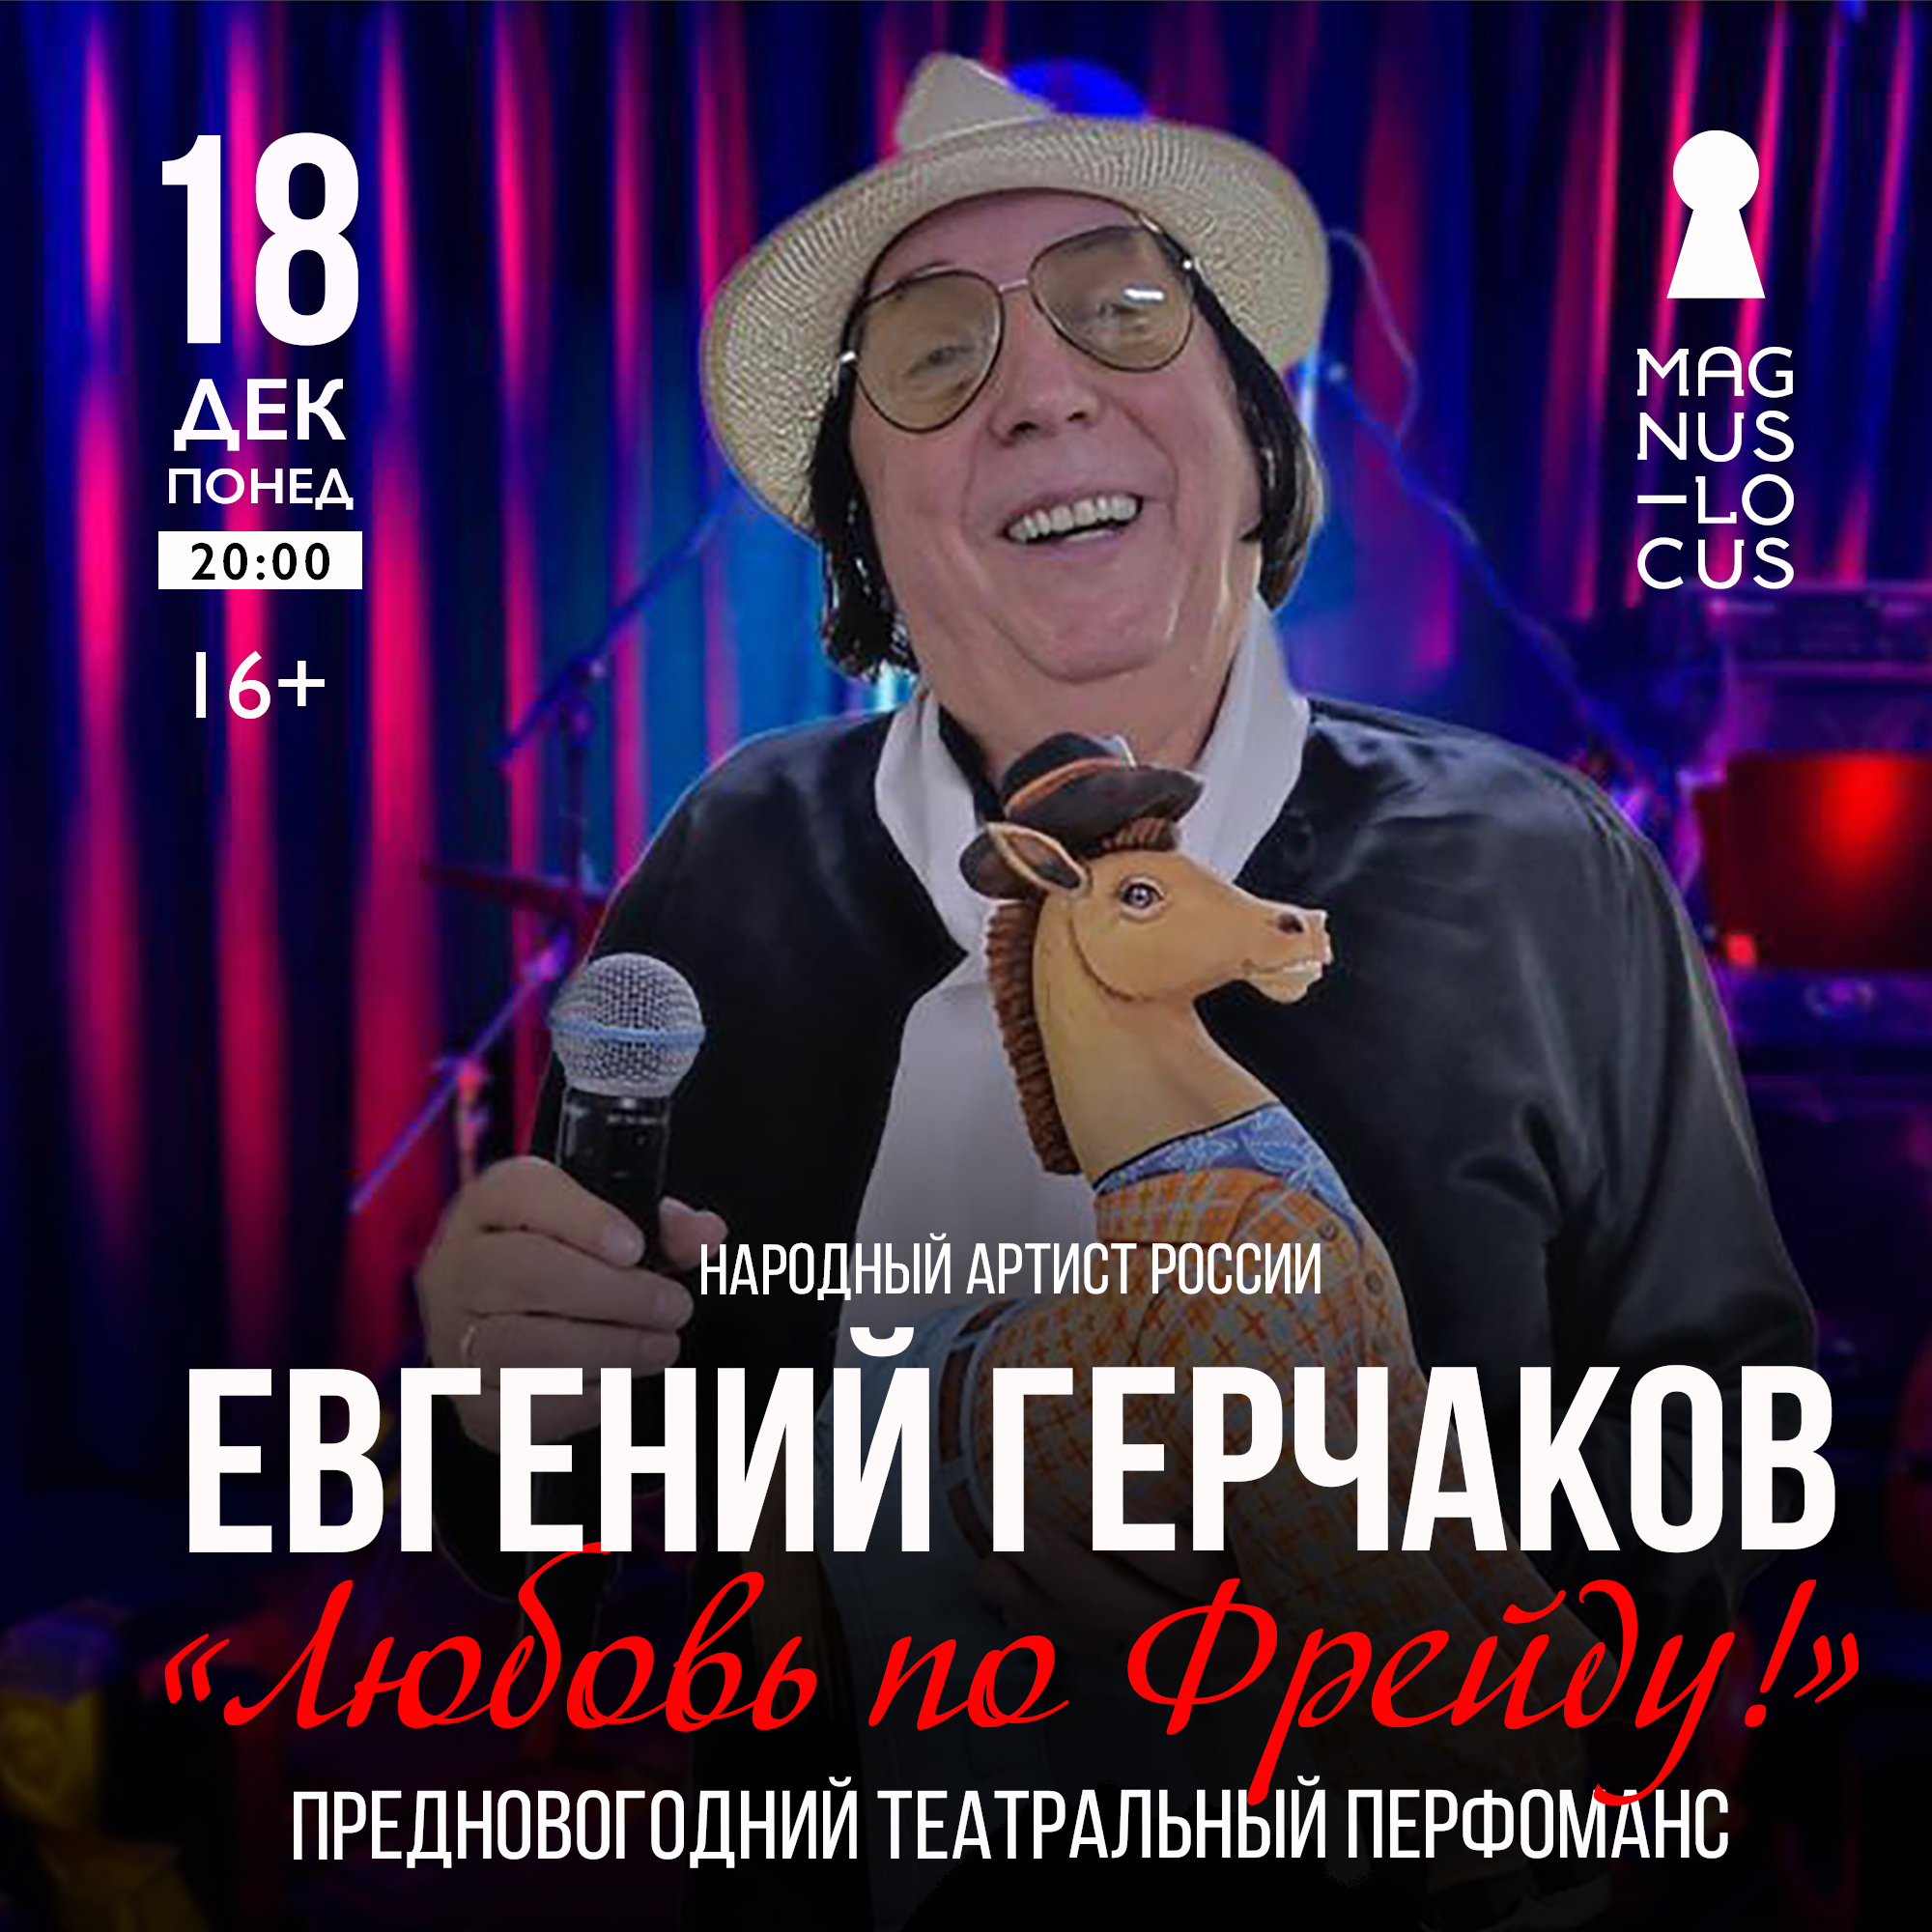 ЕВГЕНИЙ ГЕРЧАКОВ Предновогодний театральный перфоманс «Любовь по Фрейду»